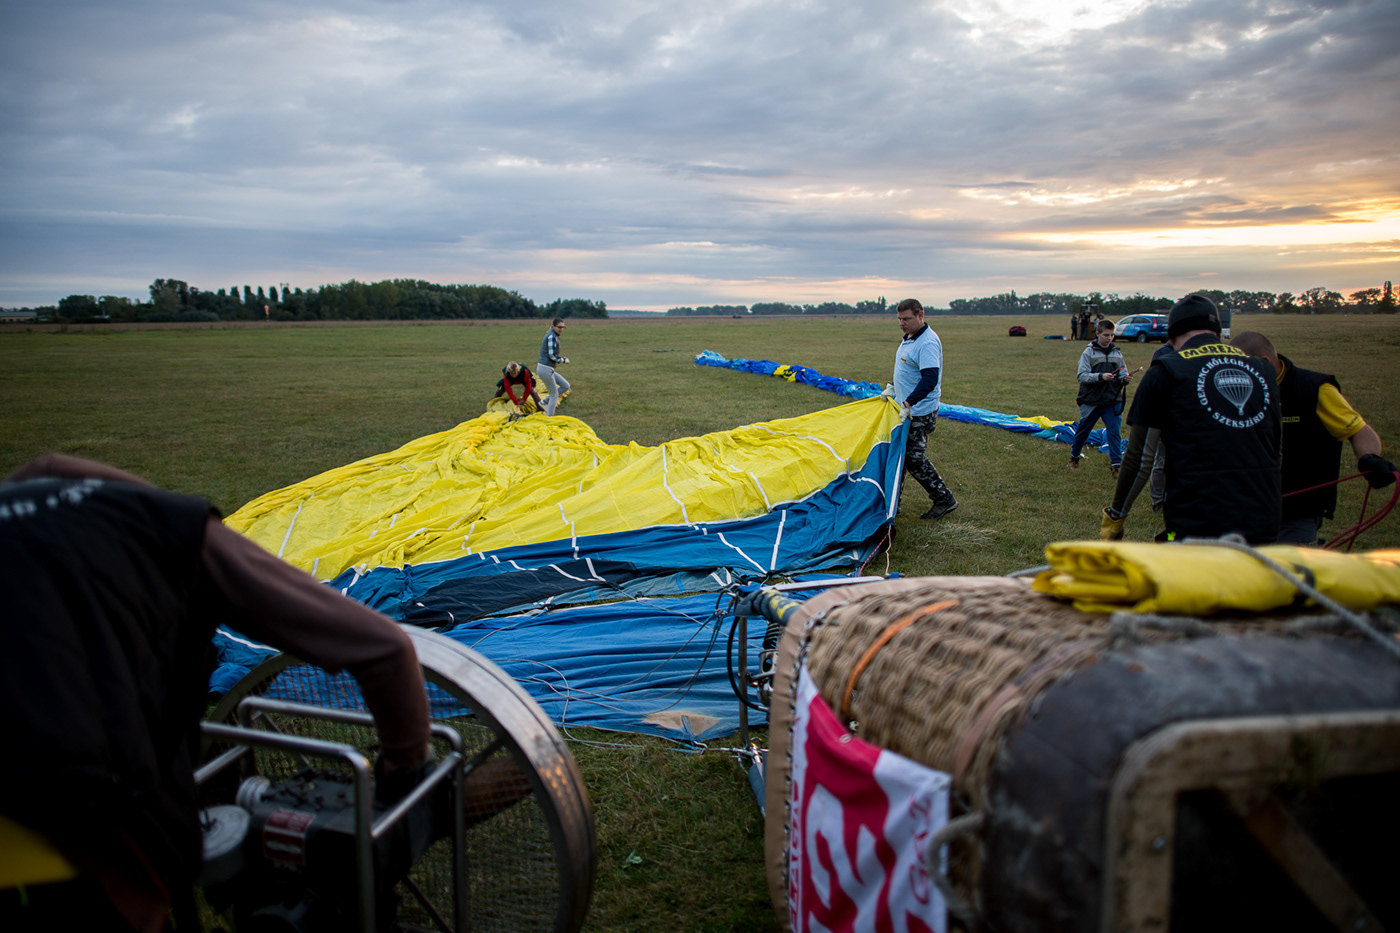 hotairballoon balloon festival airplane